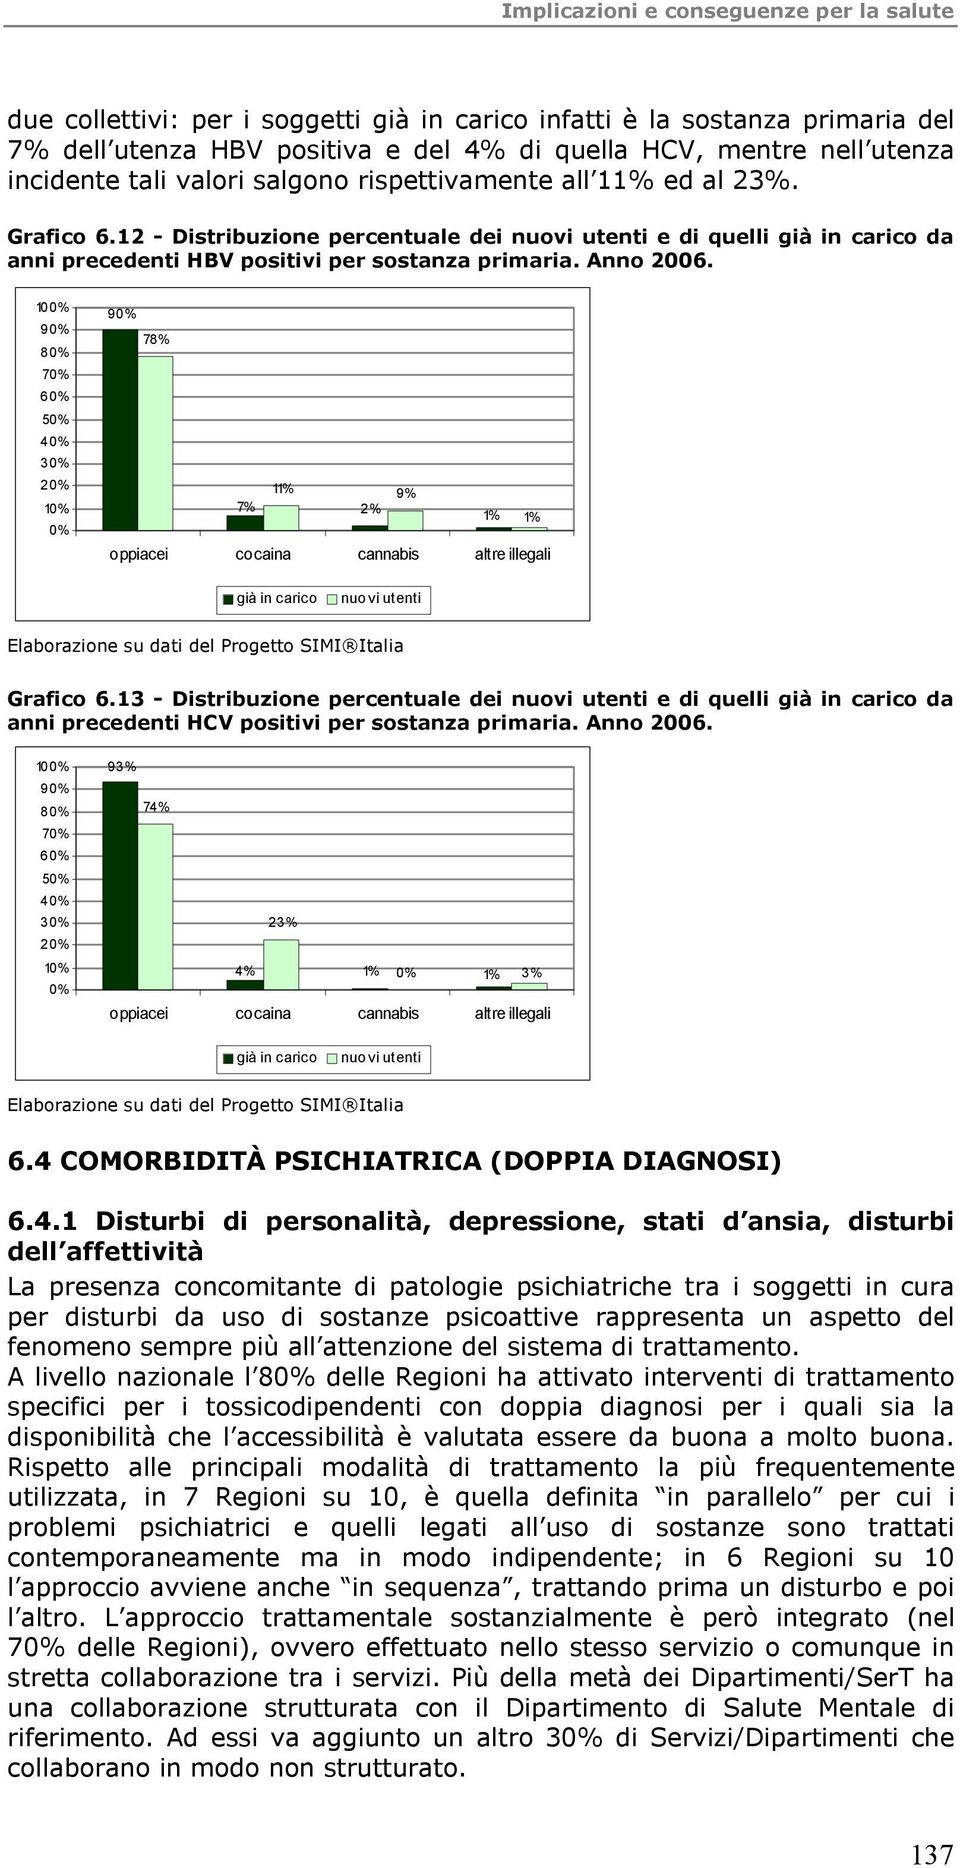 1% 9% 8% 7% 6% 5% 4% 3% 2% 1% % 9% 78% 11% 9% 7% 2% 1% 1% oppiacei cocaina cannabis altre illegali già in carico nuovi utenti Elaborazione su dati del Progetto SIMI Italia Grafico 6.